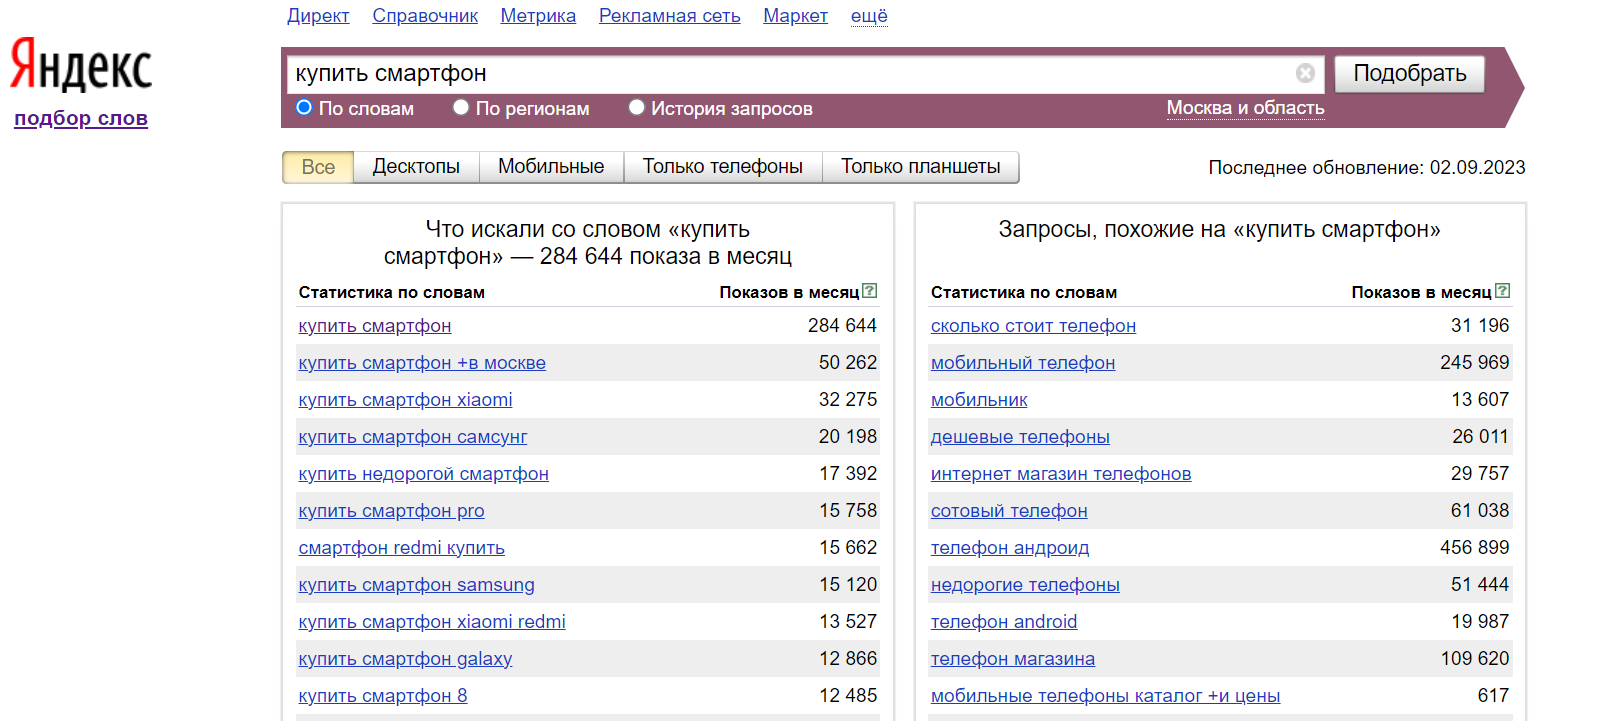 Первых поиск по сайту. Подбор ключевых слов. Подобрать ключевые слова для сайта. Запросы в Яндексе по словам.